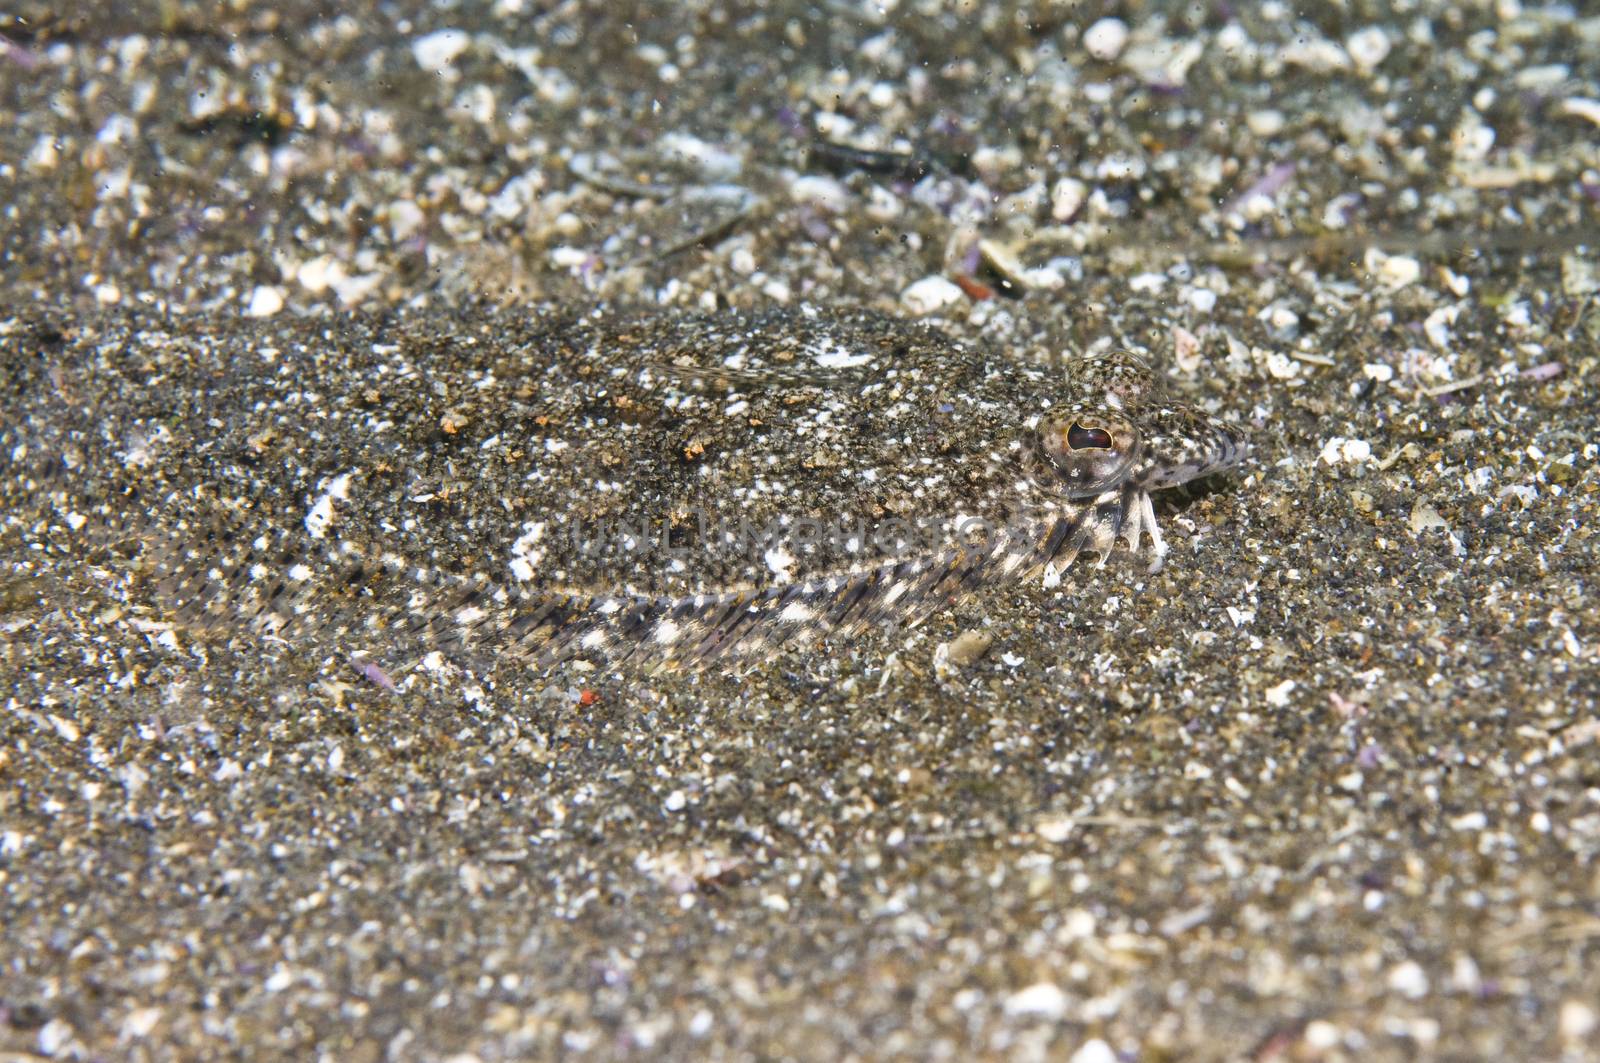 Sanddab. Little Scorpion, Santa Cruz, Channel Islands, 34°02 N 119°32W